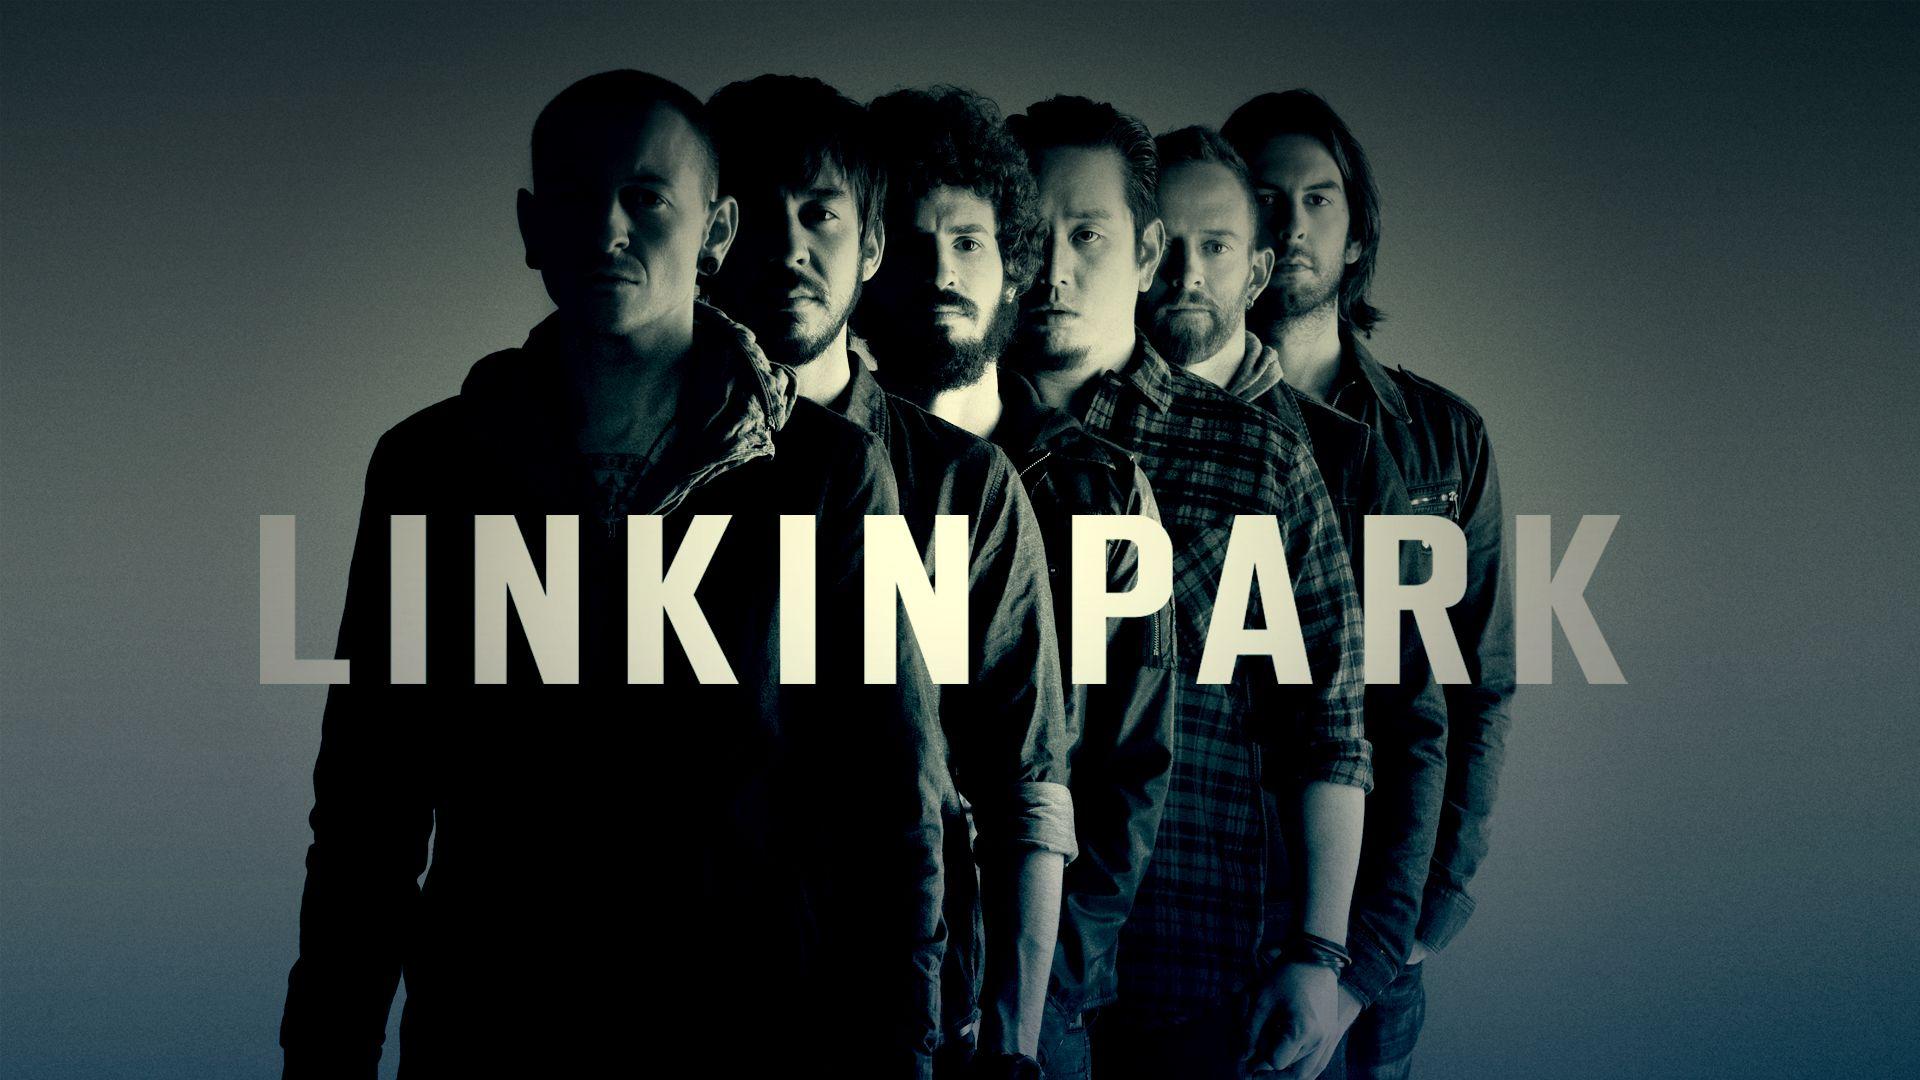 Linkin Park Wallpaper 12843 1920x1080 px